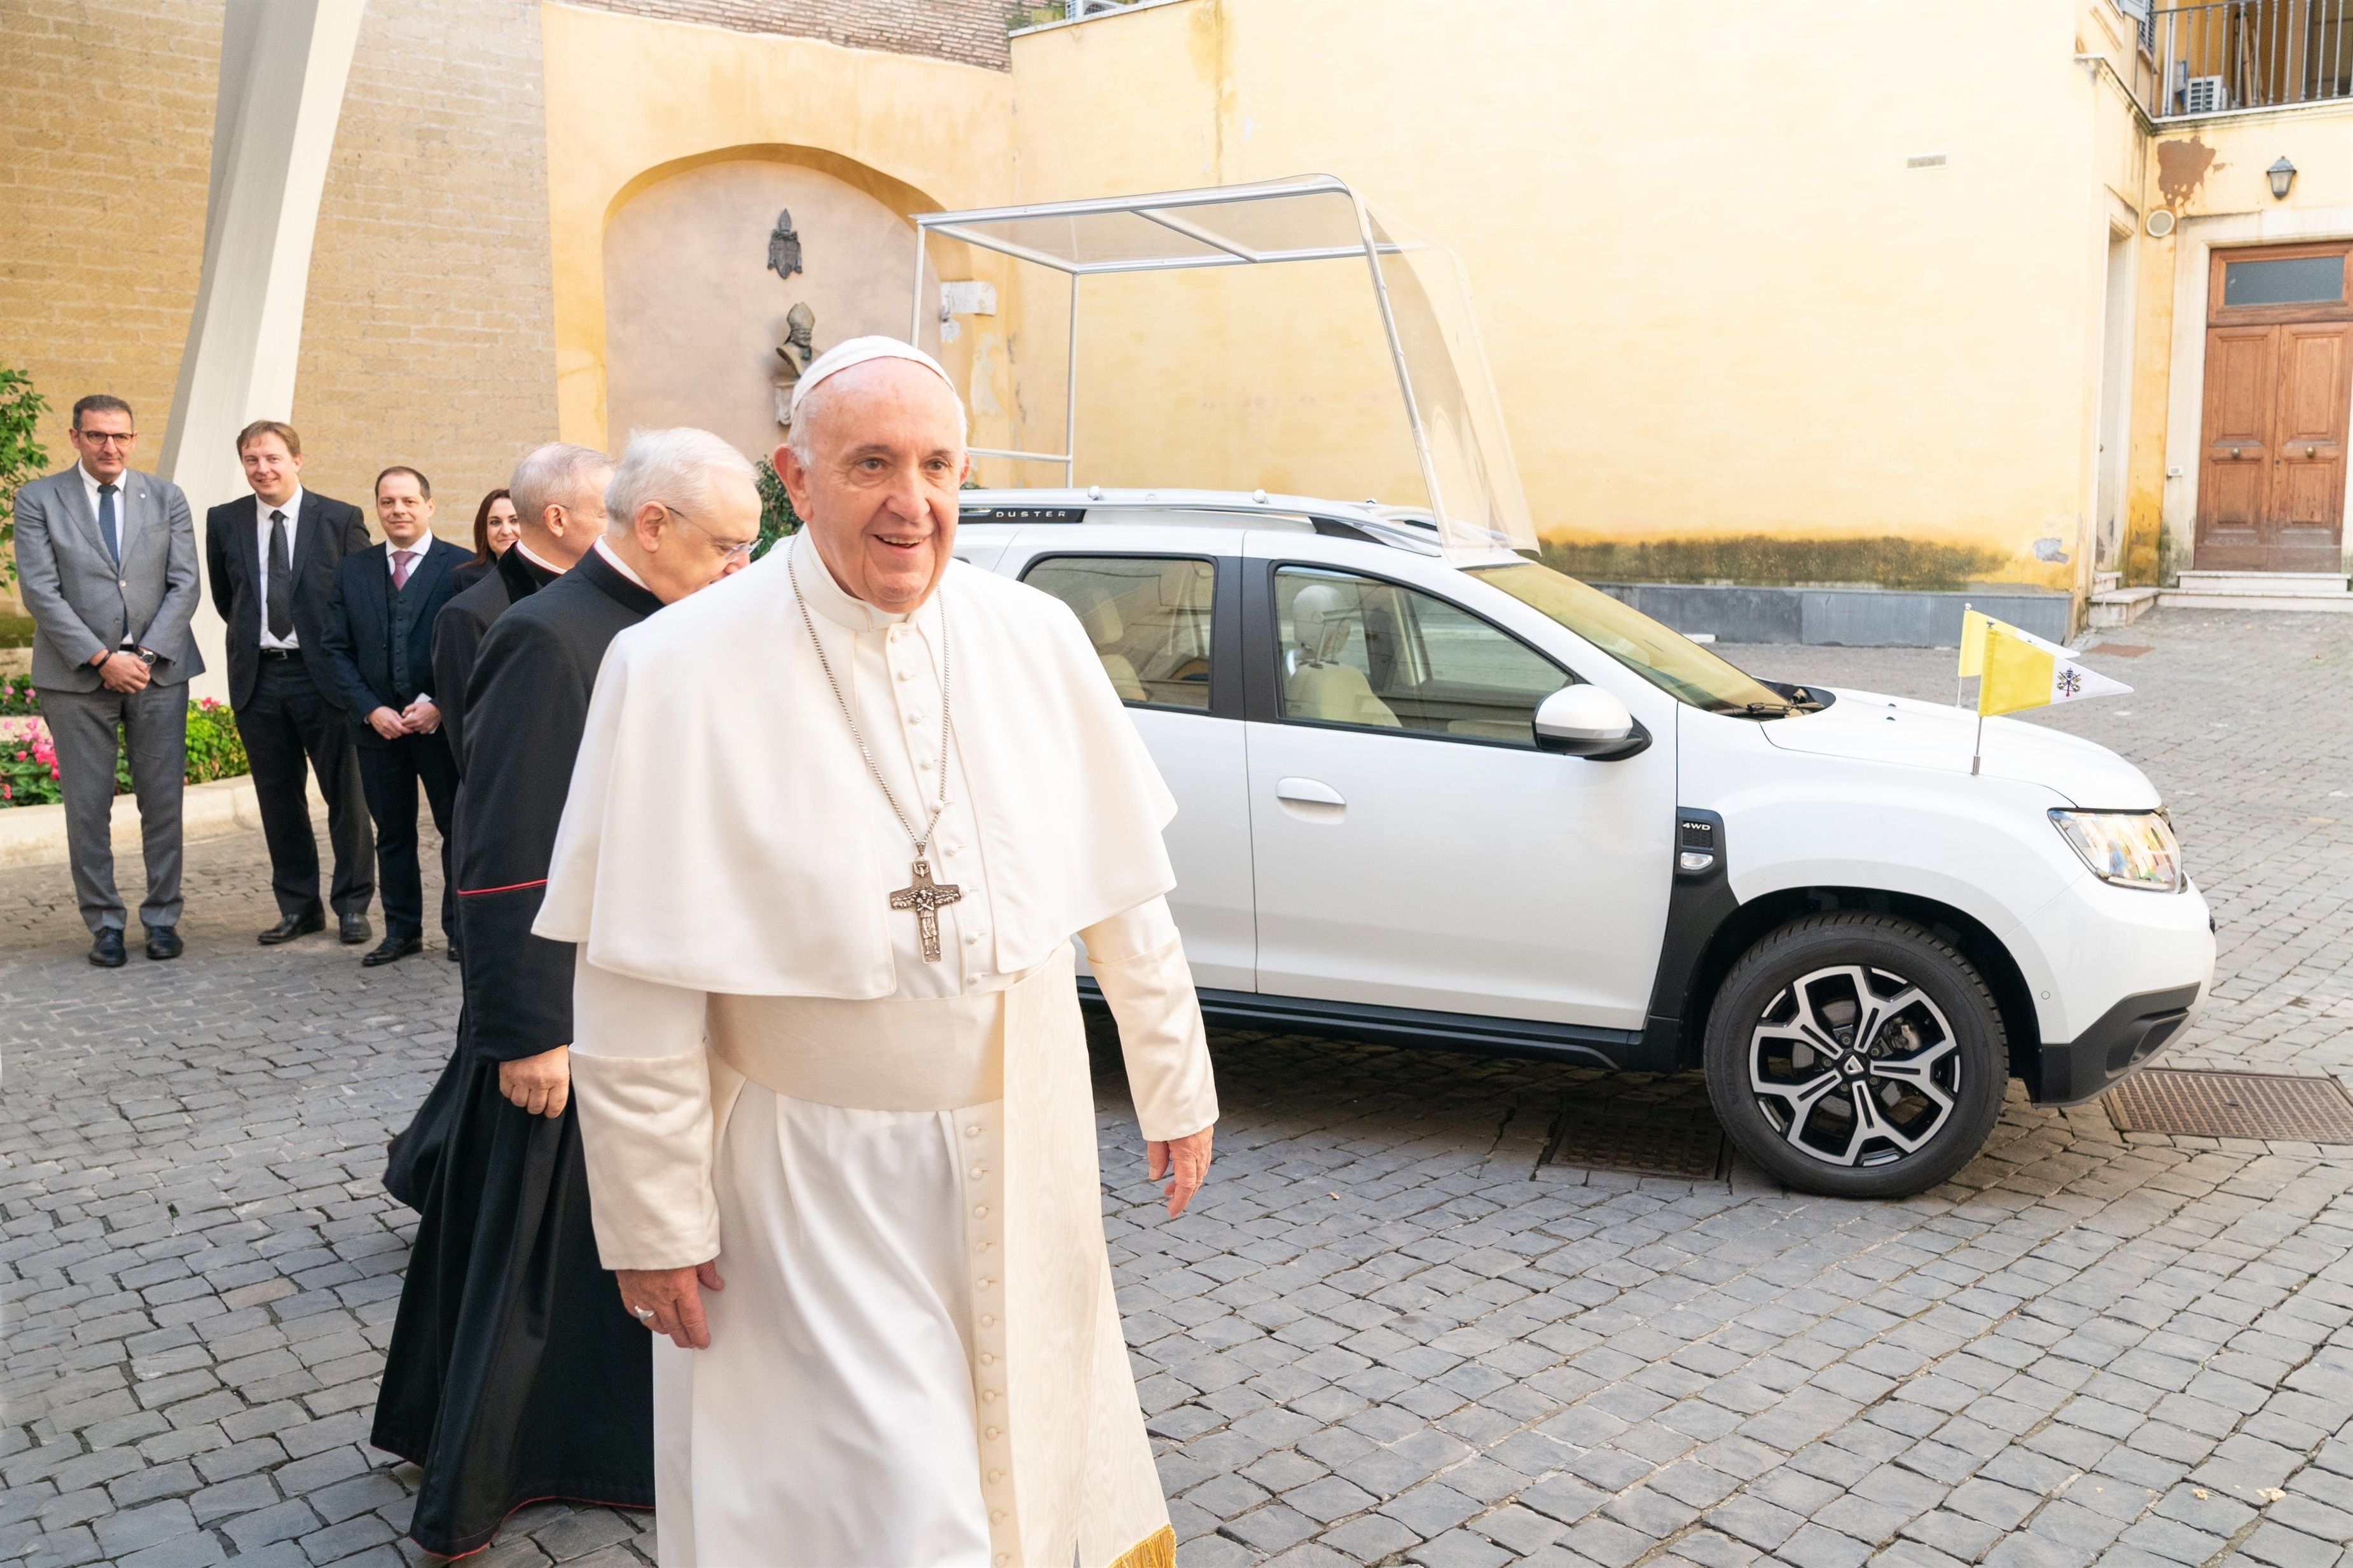 El Papa Francisco, sobre la vejez: "A esta edad, me río de mí mismo y sigo adelante"